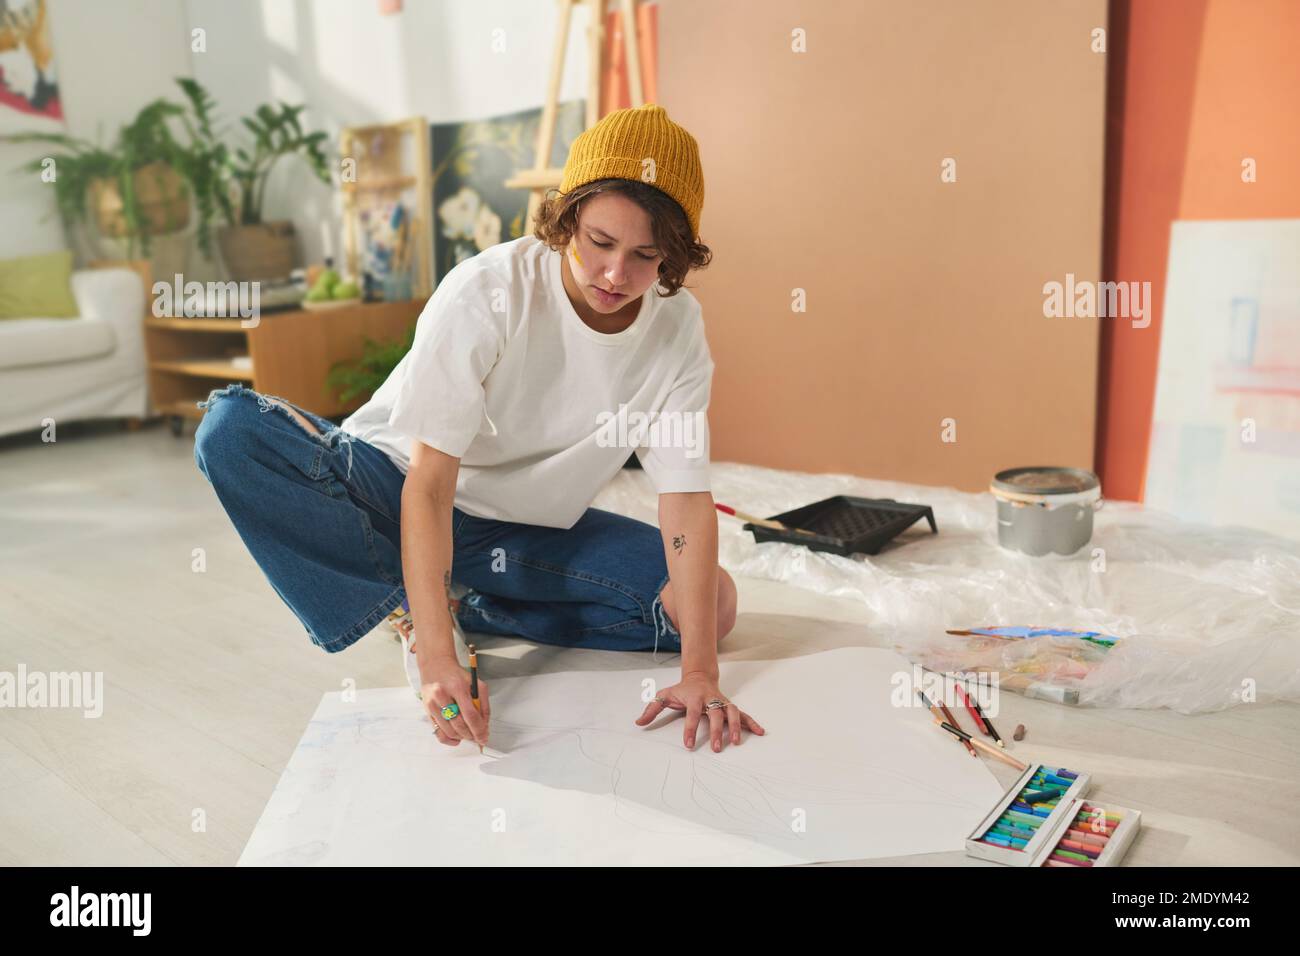 Artista femenino morena creativa joven dibujando con crayones en una hoja grande de papel en blanco mientras se sienta en el piso en el estudio casero Foto de stock